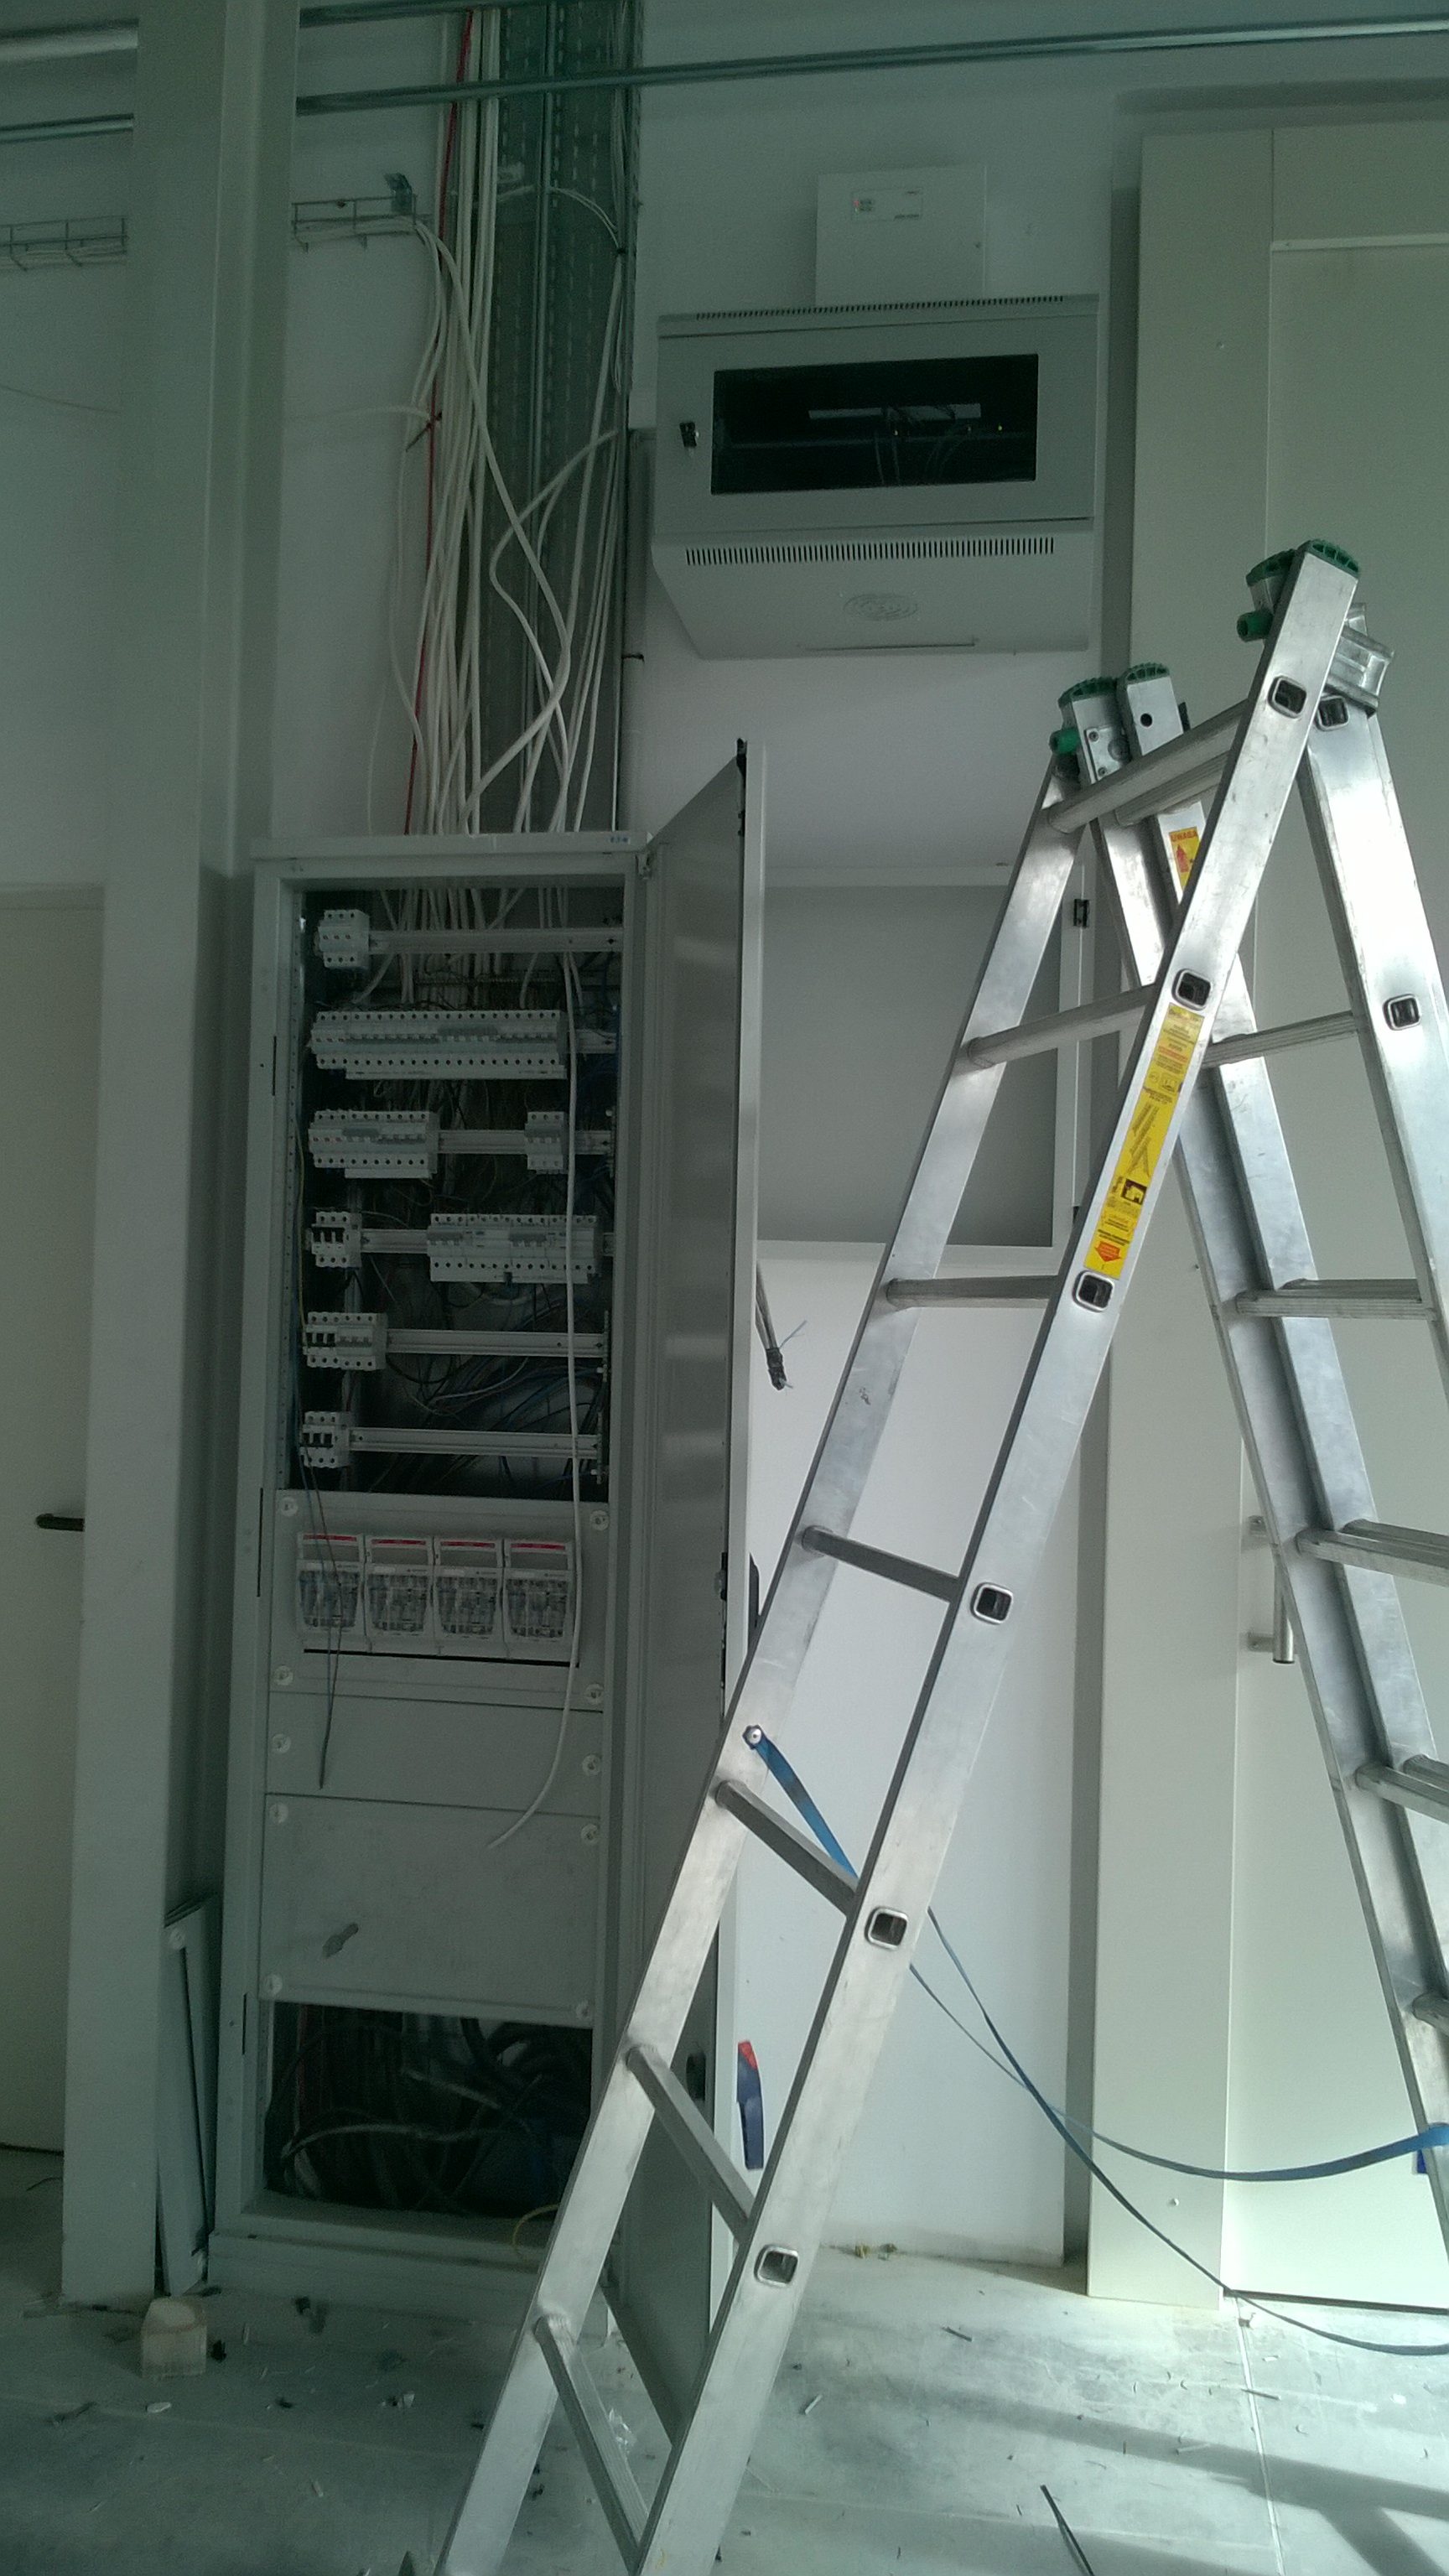 Wykonaliśmy sieć LAN, Monitoring, Alarm, KD oraz instalację elektryczną w gabinecie lekarskim Kraśnik